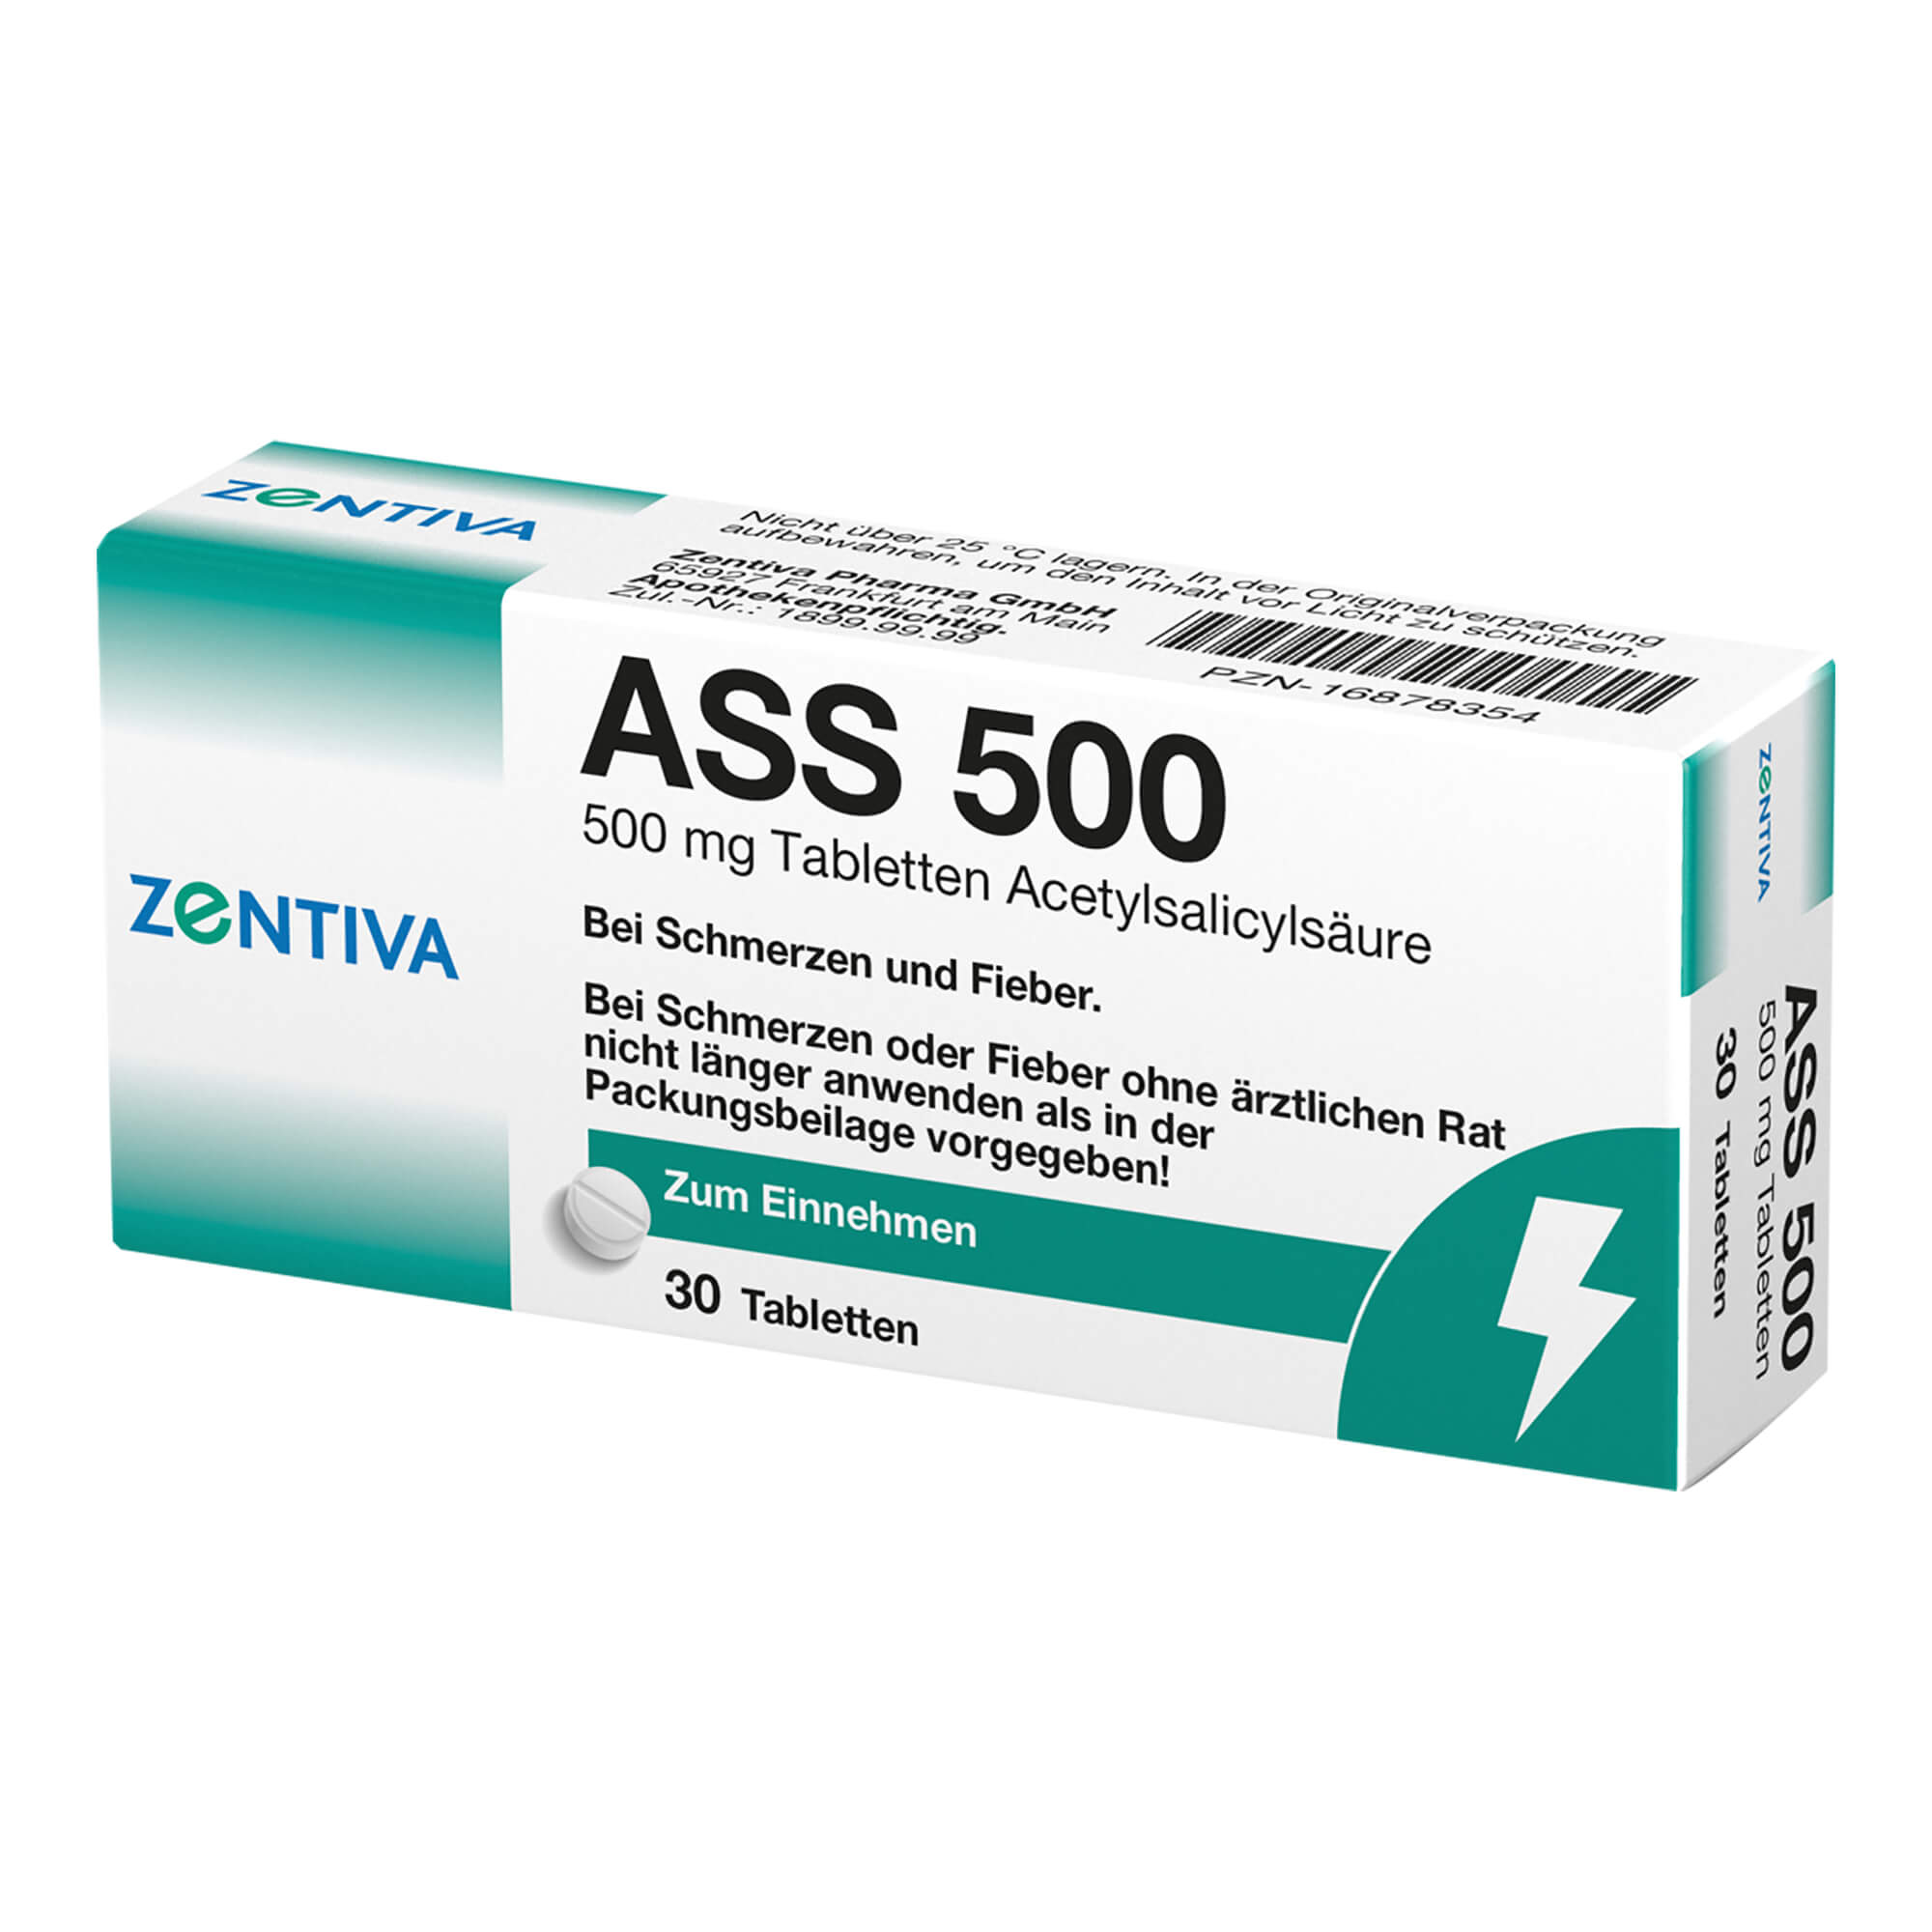 ASS 500 Acetylsalicylsäure 500 mg Tabletten